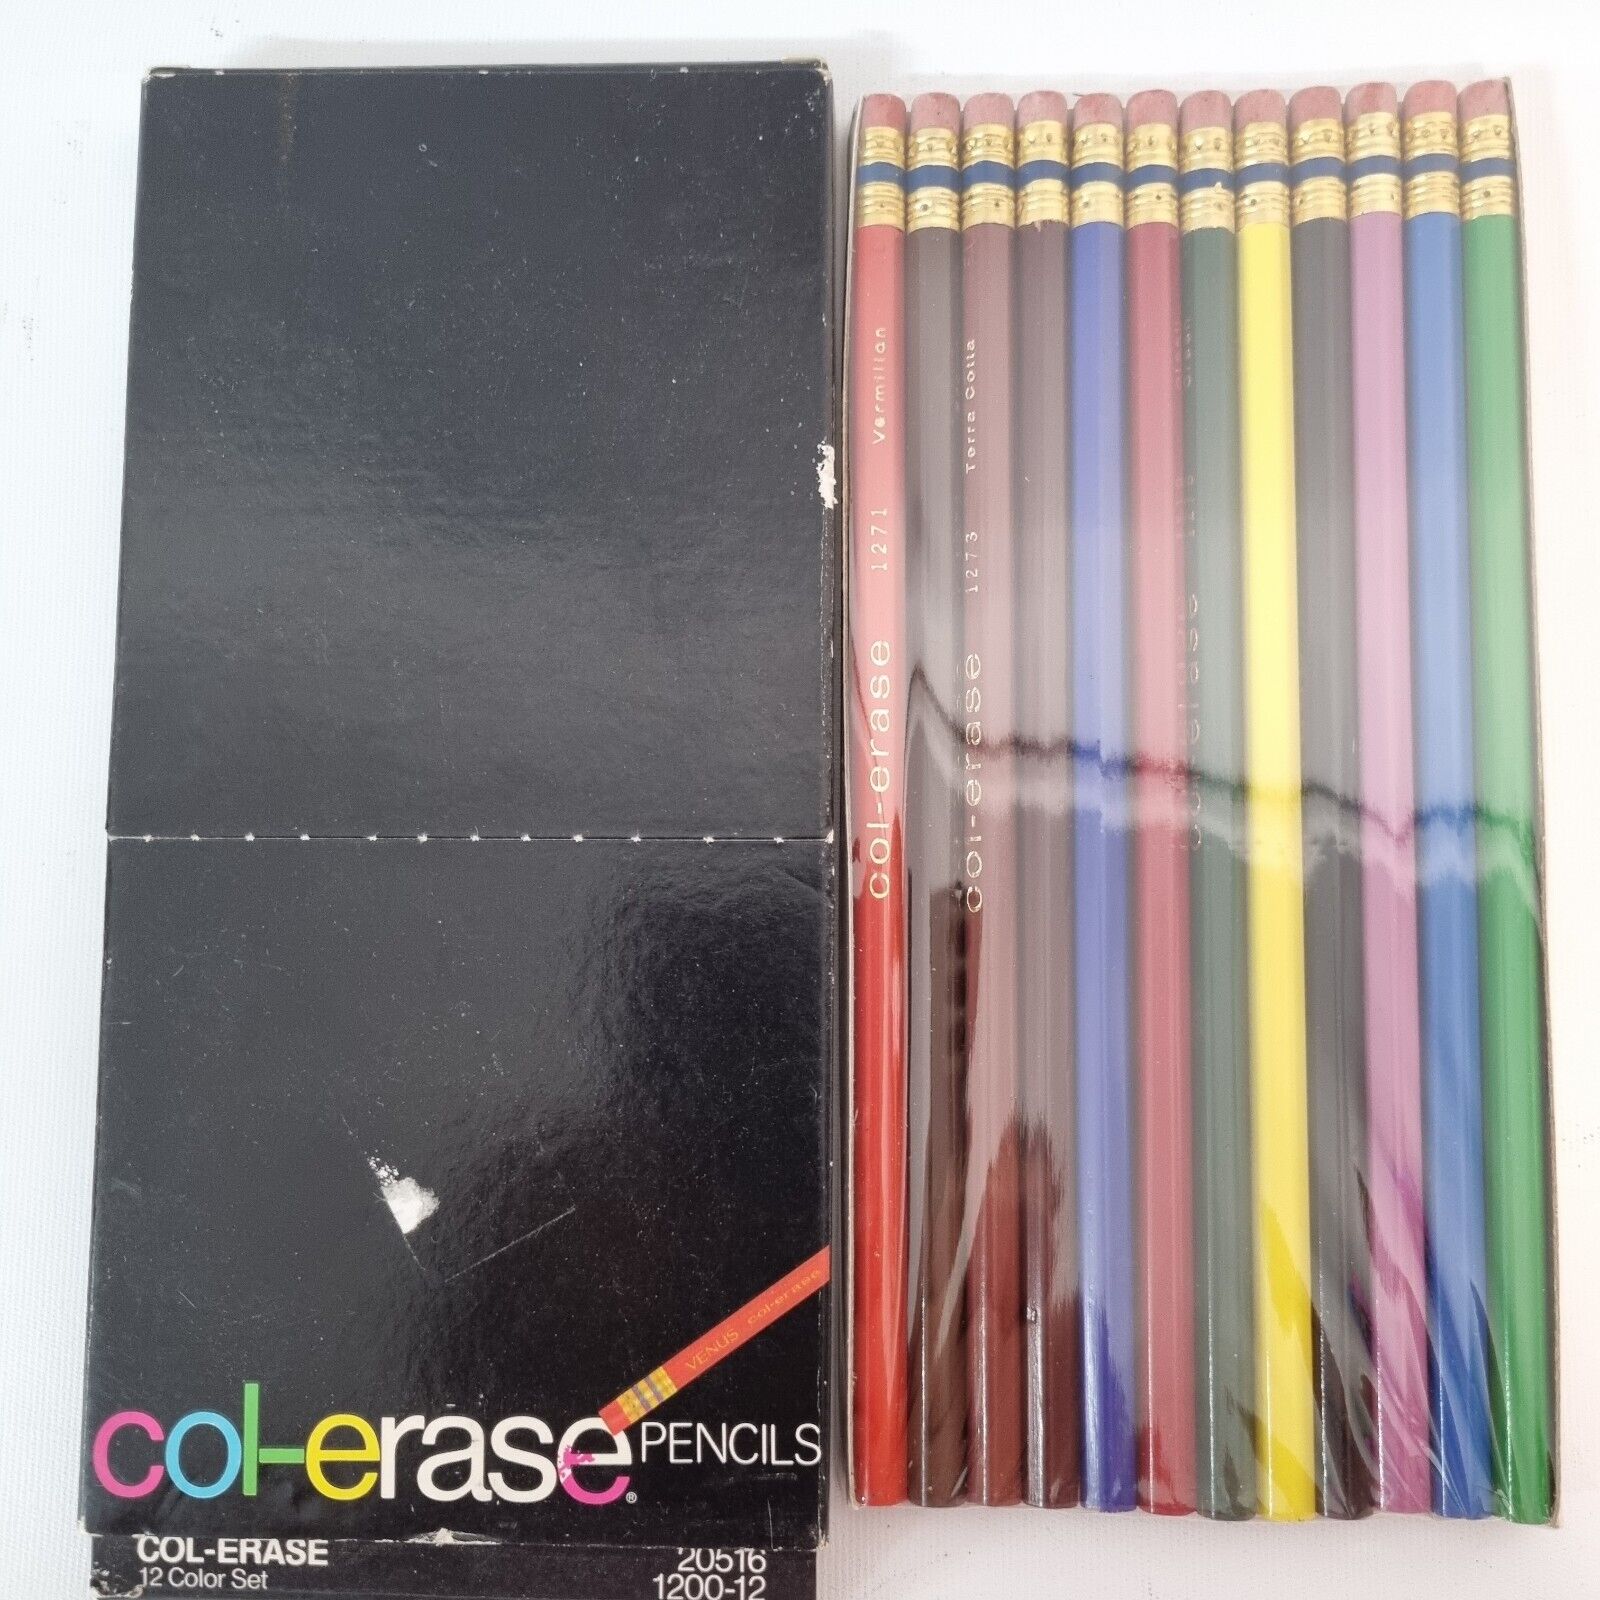 VTG NOS Faber-Castell Col-Erase 12 Color Set Colored Pencils New Sealed